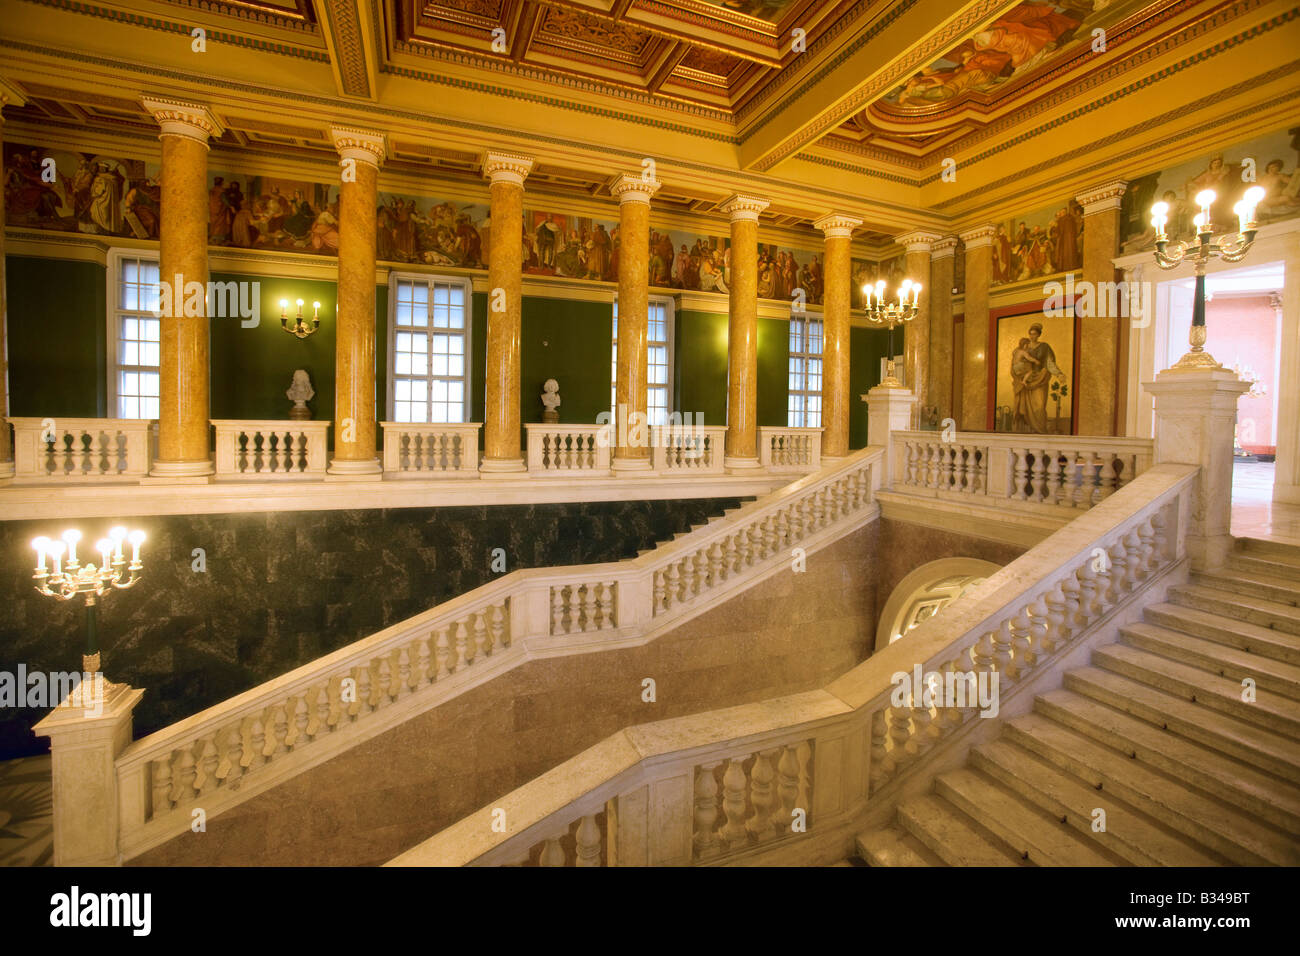 L'intérieur du musée national de Budapest Hongrie Banque D'Images